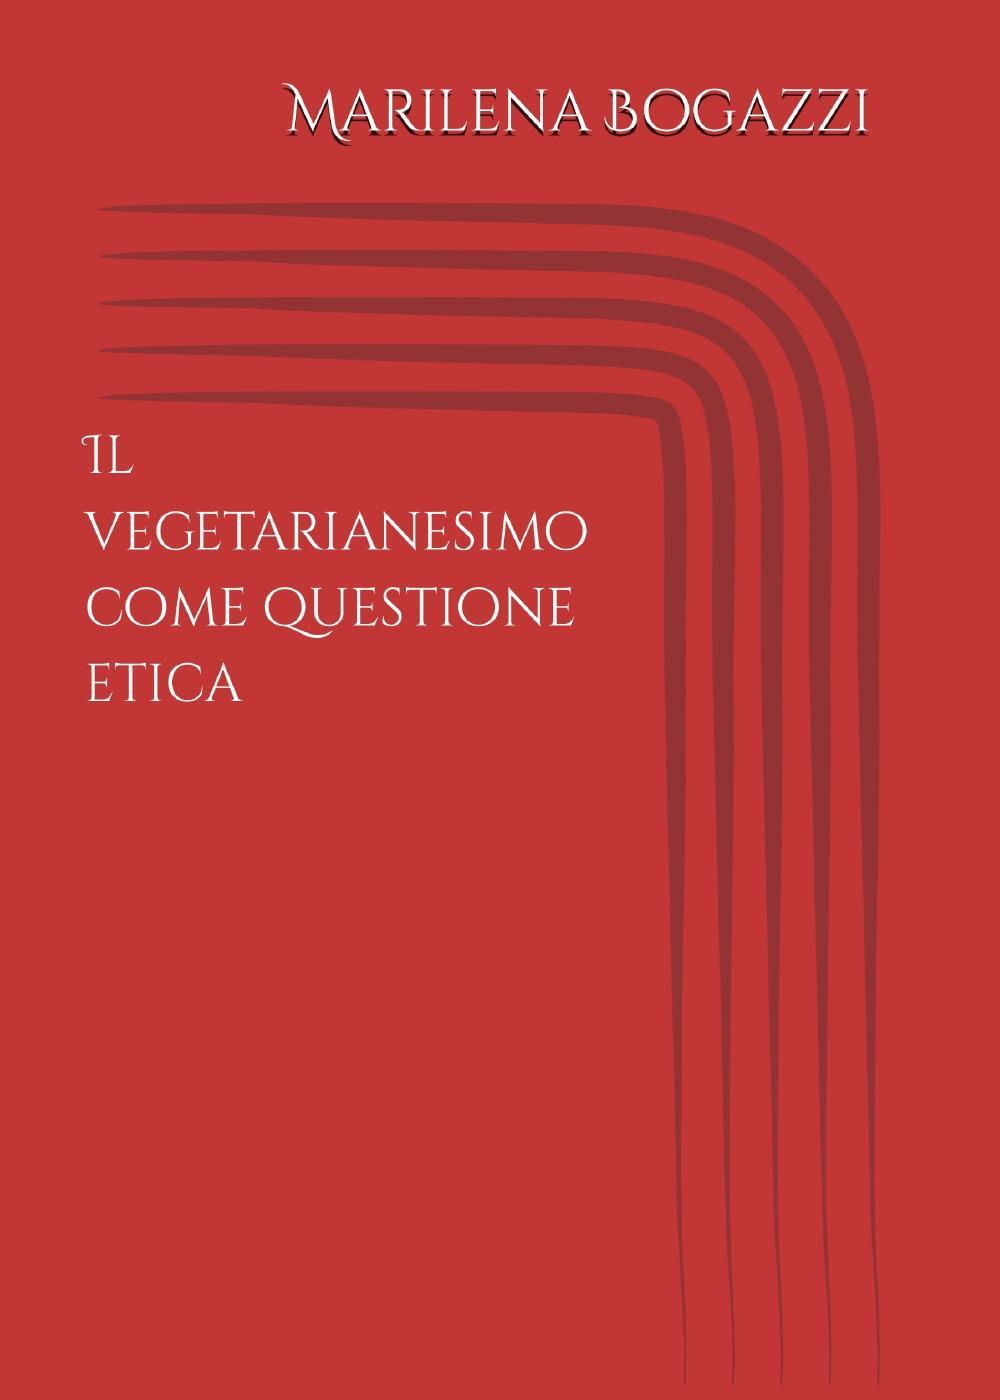 Il Vegetarianesimo come questione etica